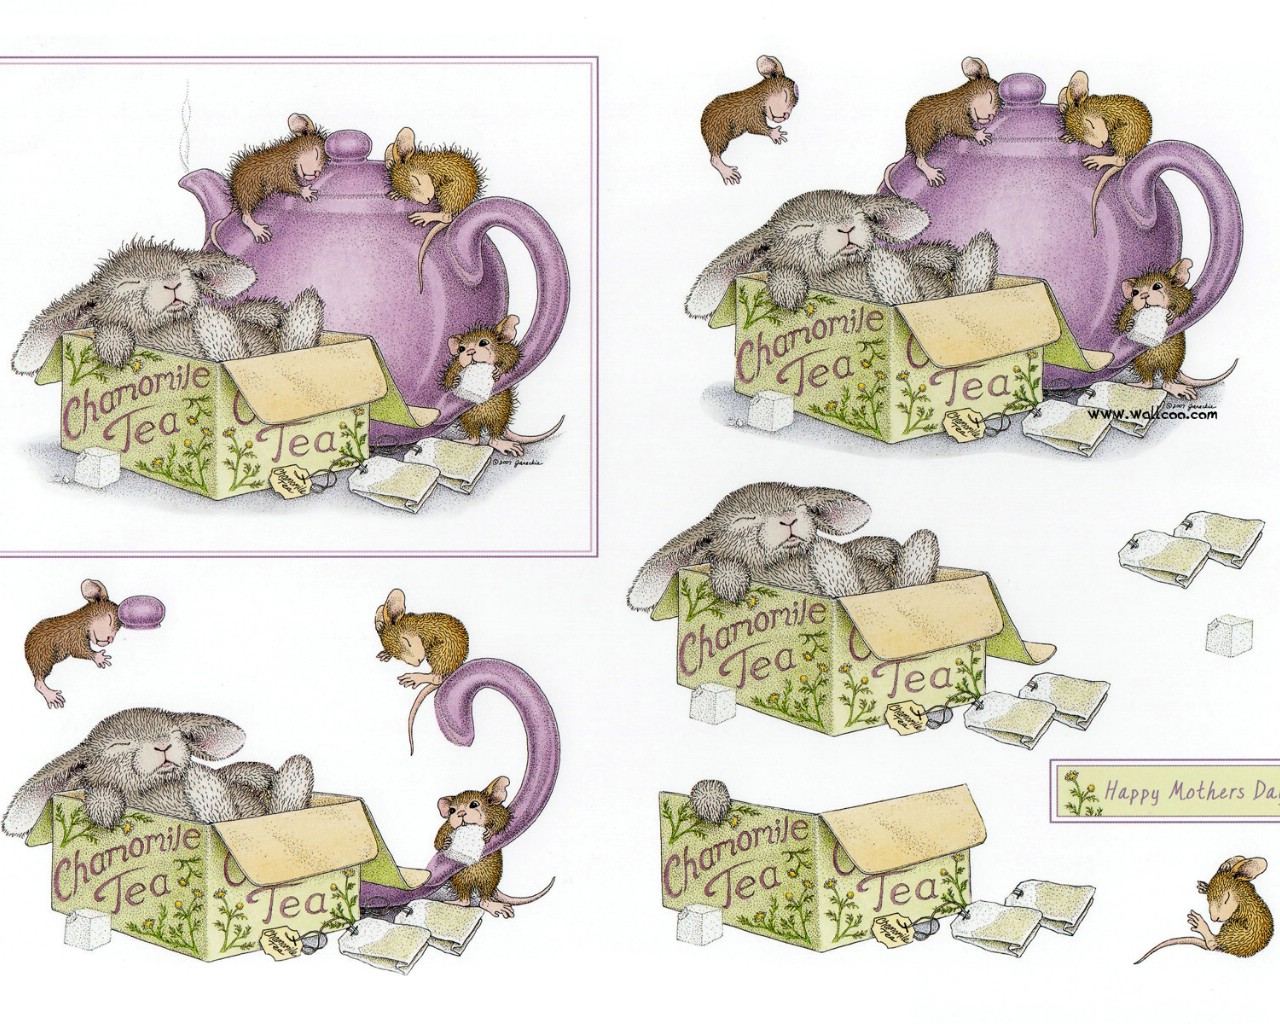 壁纸1280x1024 chamomile 可爱小老鼠插画原画壁纸 鼠鼠一家-温馨小老鼠插画壁纸壁纸 鼠鼠一家-温馨小老鼠插画壁纸图片 鼠鼠一家-温馨小老鼠插画壁纸素材 绘画壁纸 绘画图库 绘画图片素材桌面壁纸